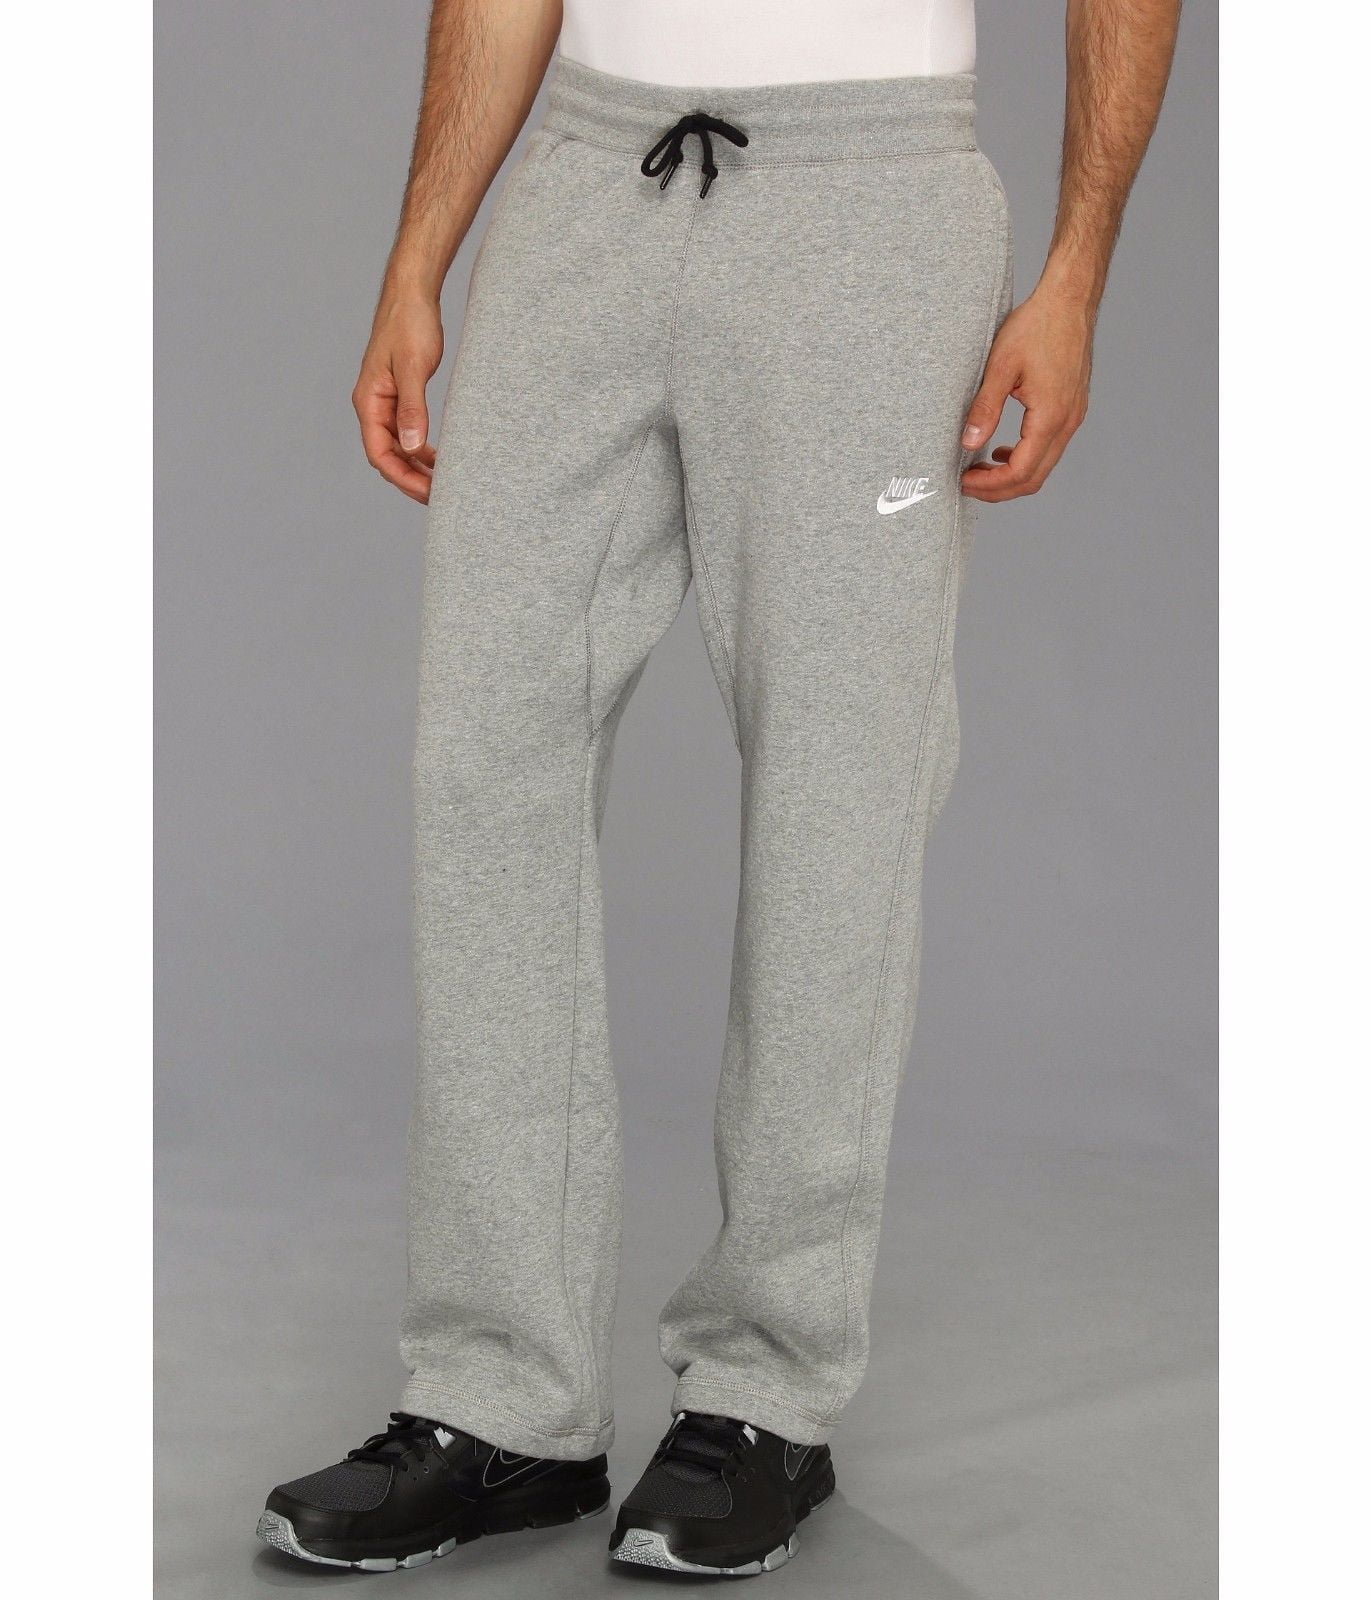 Nike Nike Aw77 Mens Open Hem Fleece Sweatpants Size L